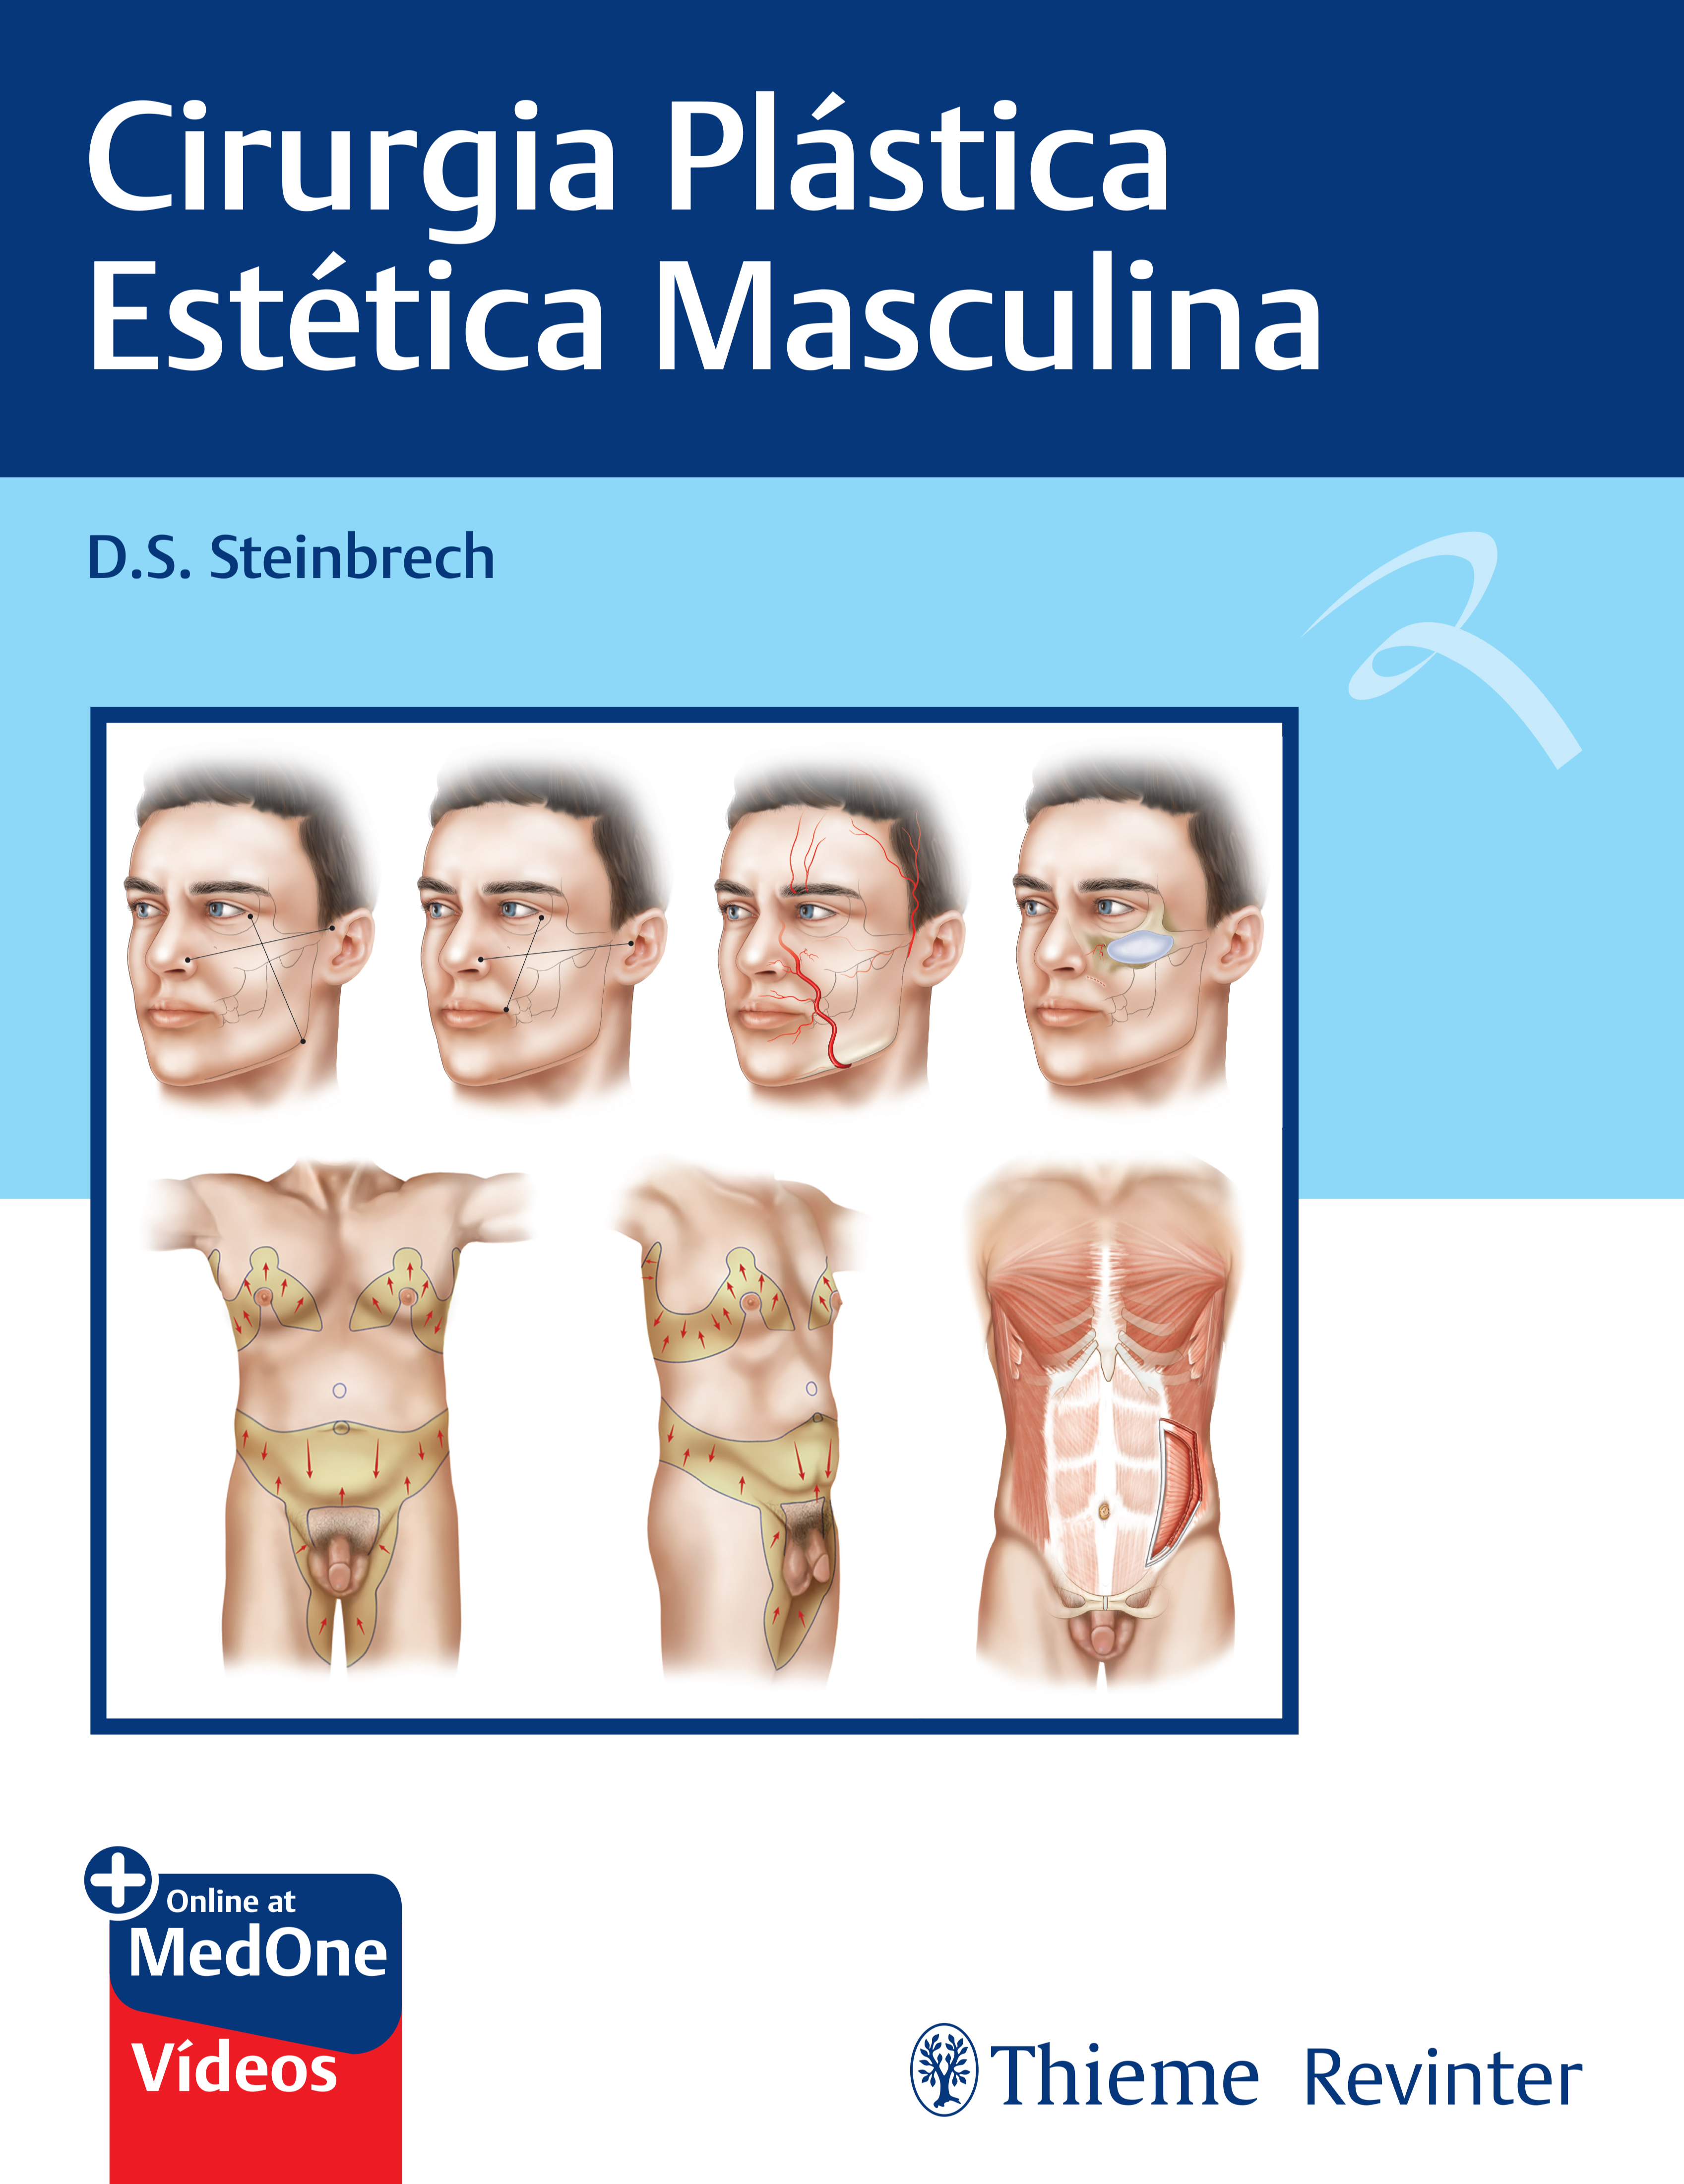 Cirurgia Plastica Estetica Masculina